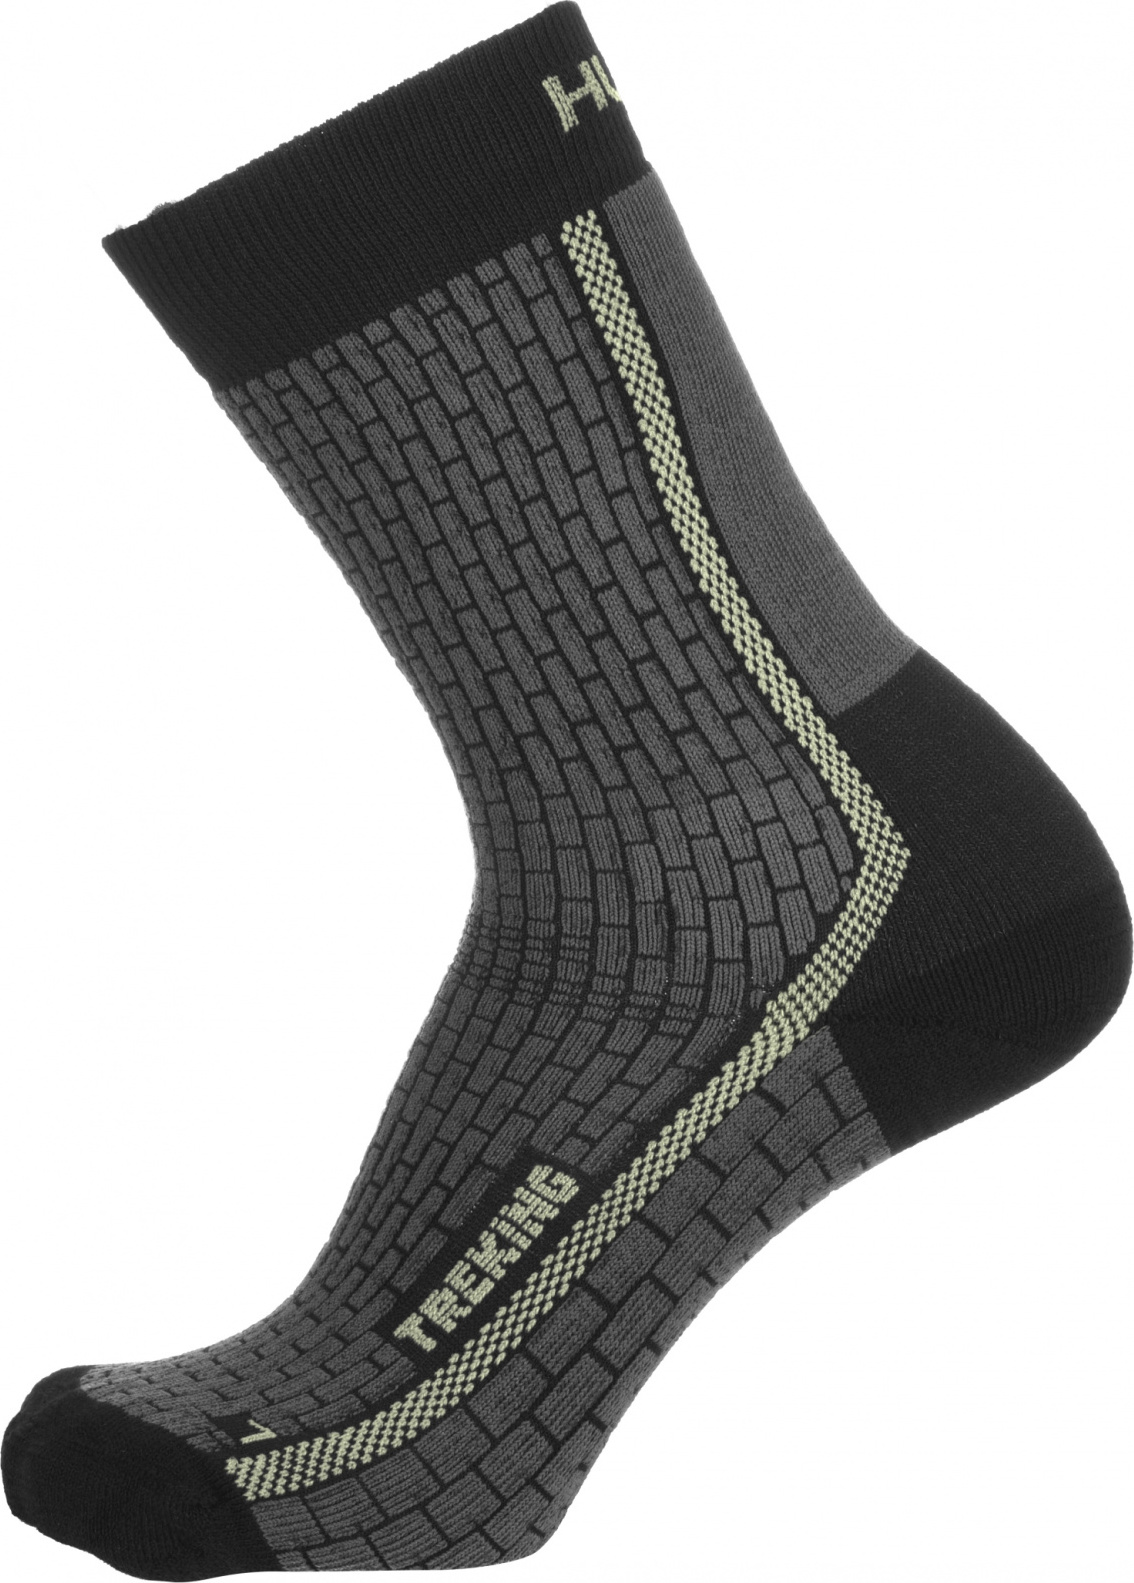 Ponožky HUSKY Treking antracit/sv. zelená Velikost: M (36-40)